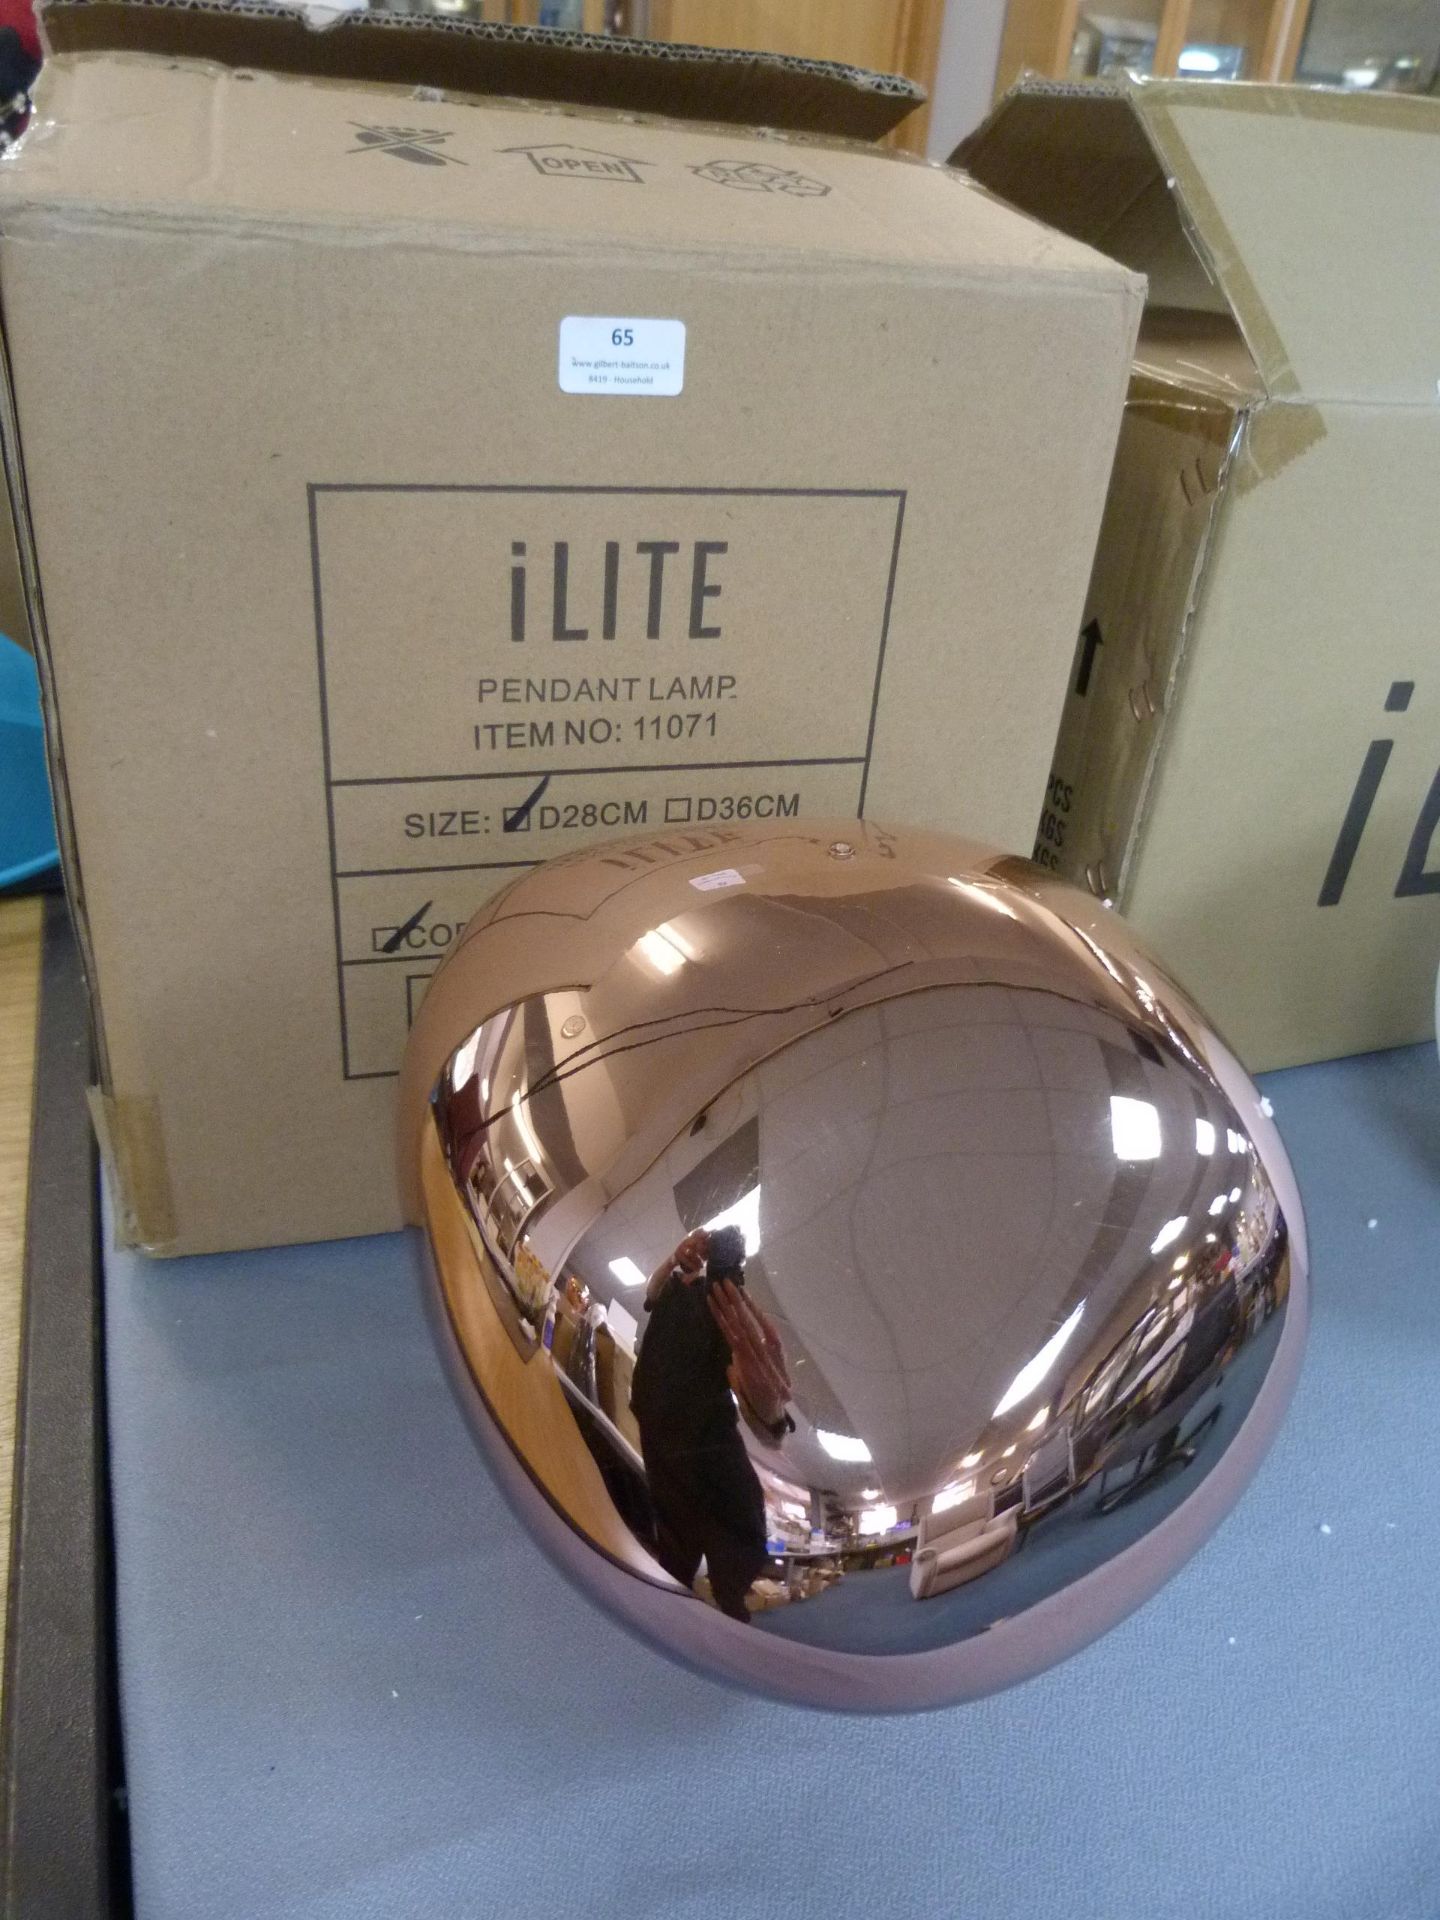 *iLite Copper Finish Pendant Lamp